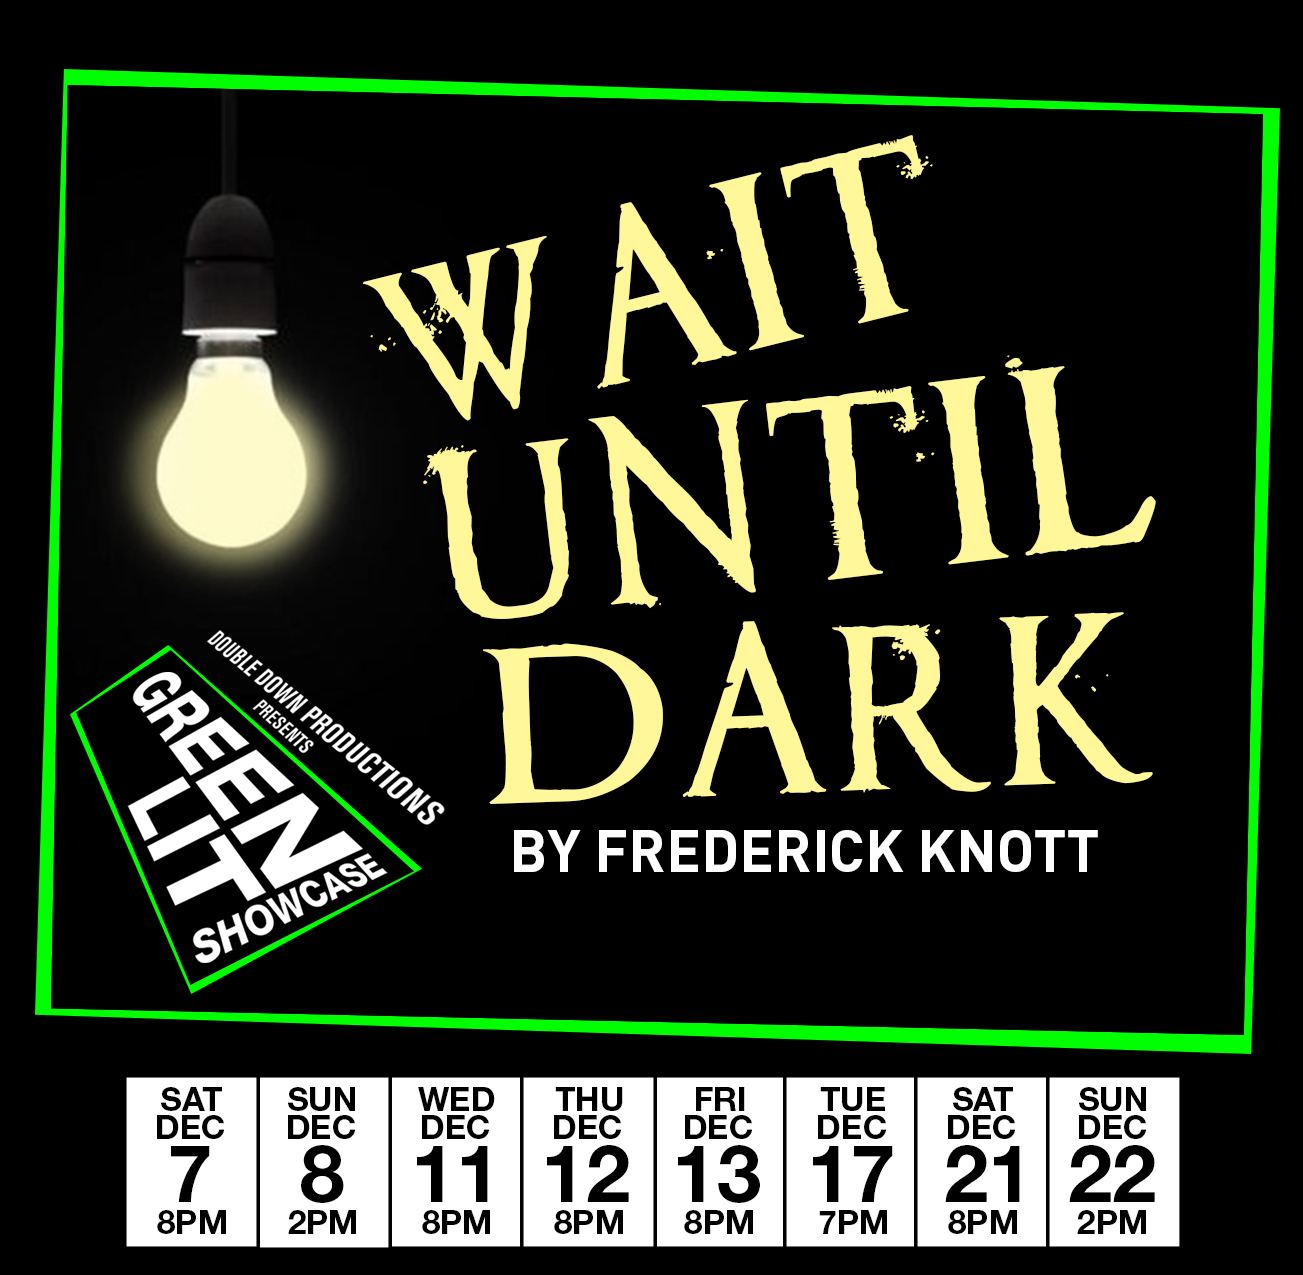 Wait Until Dark - Wed Dec 11th